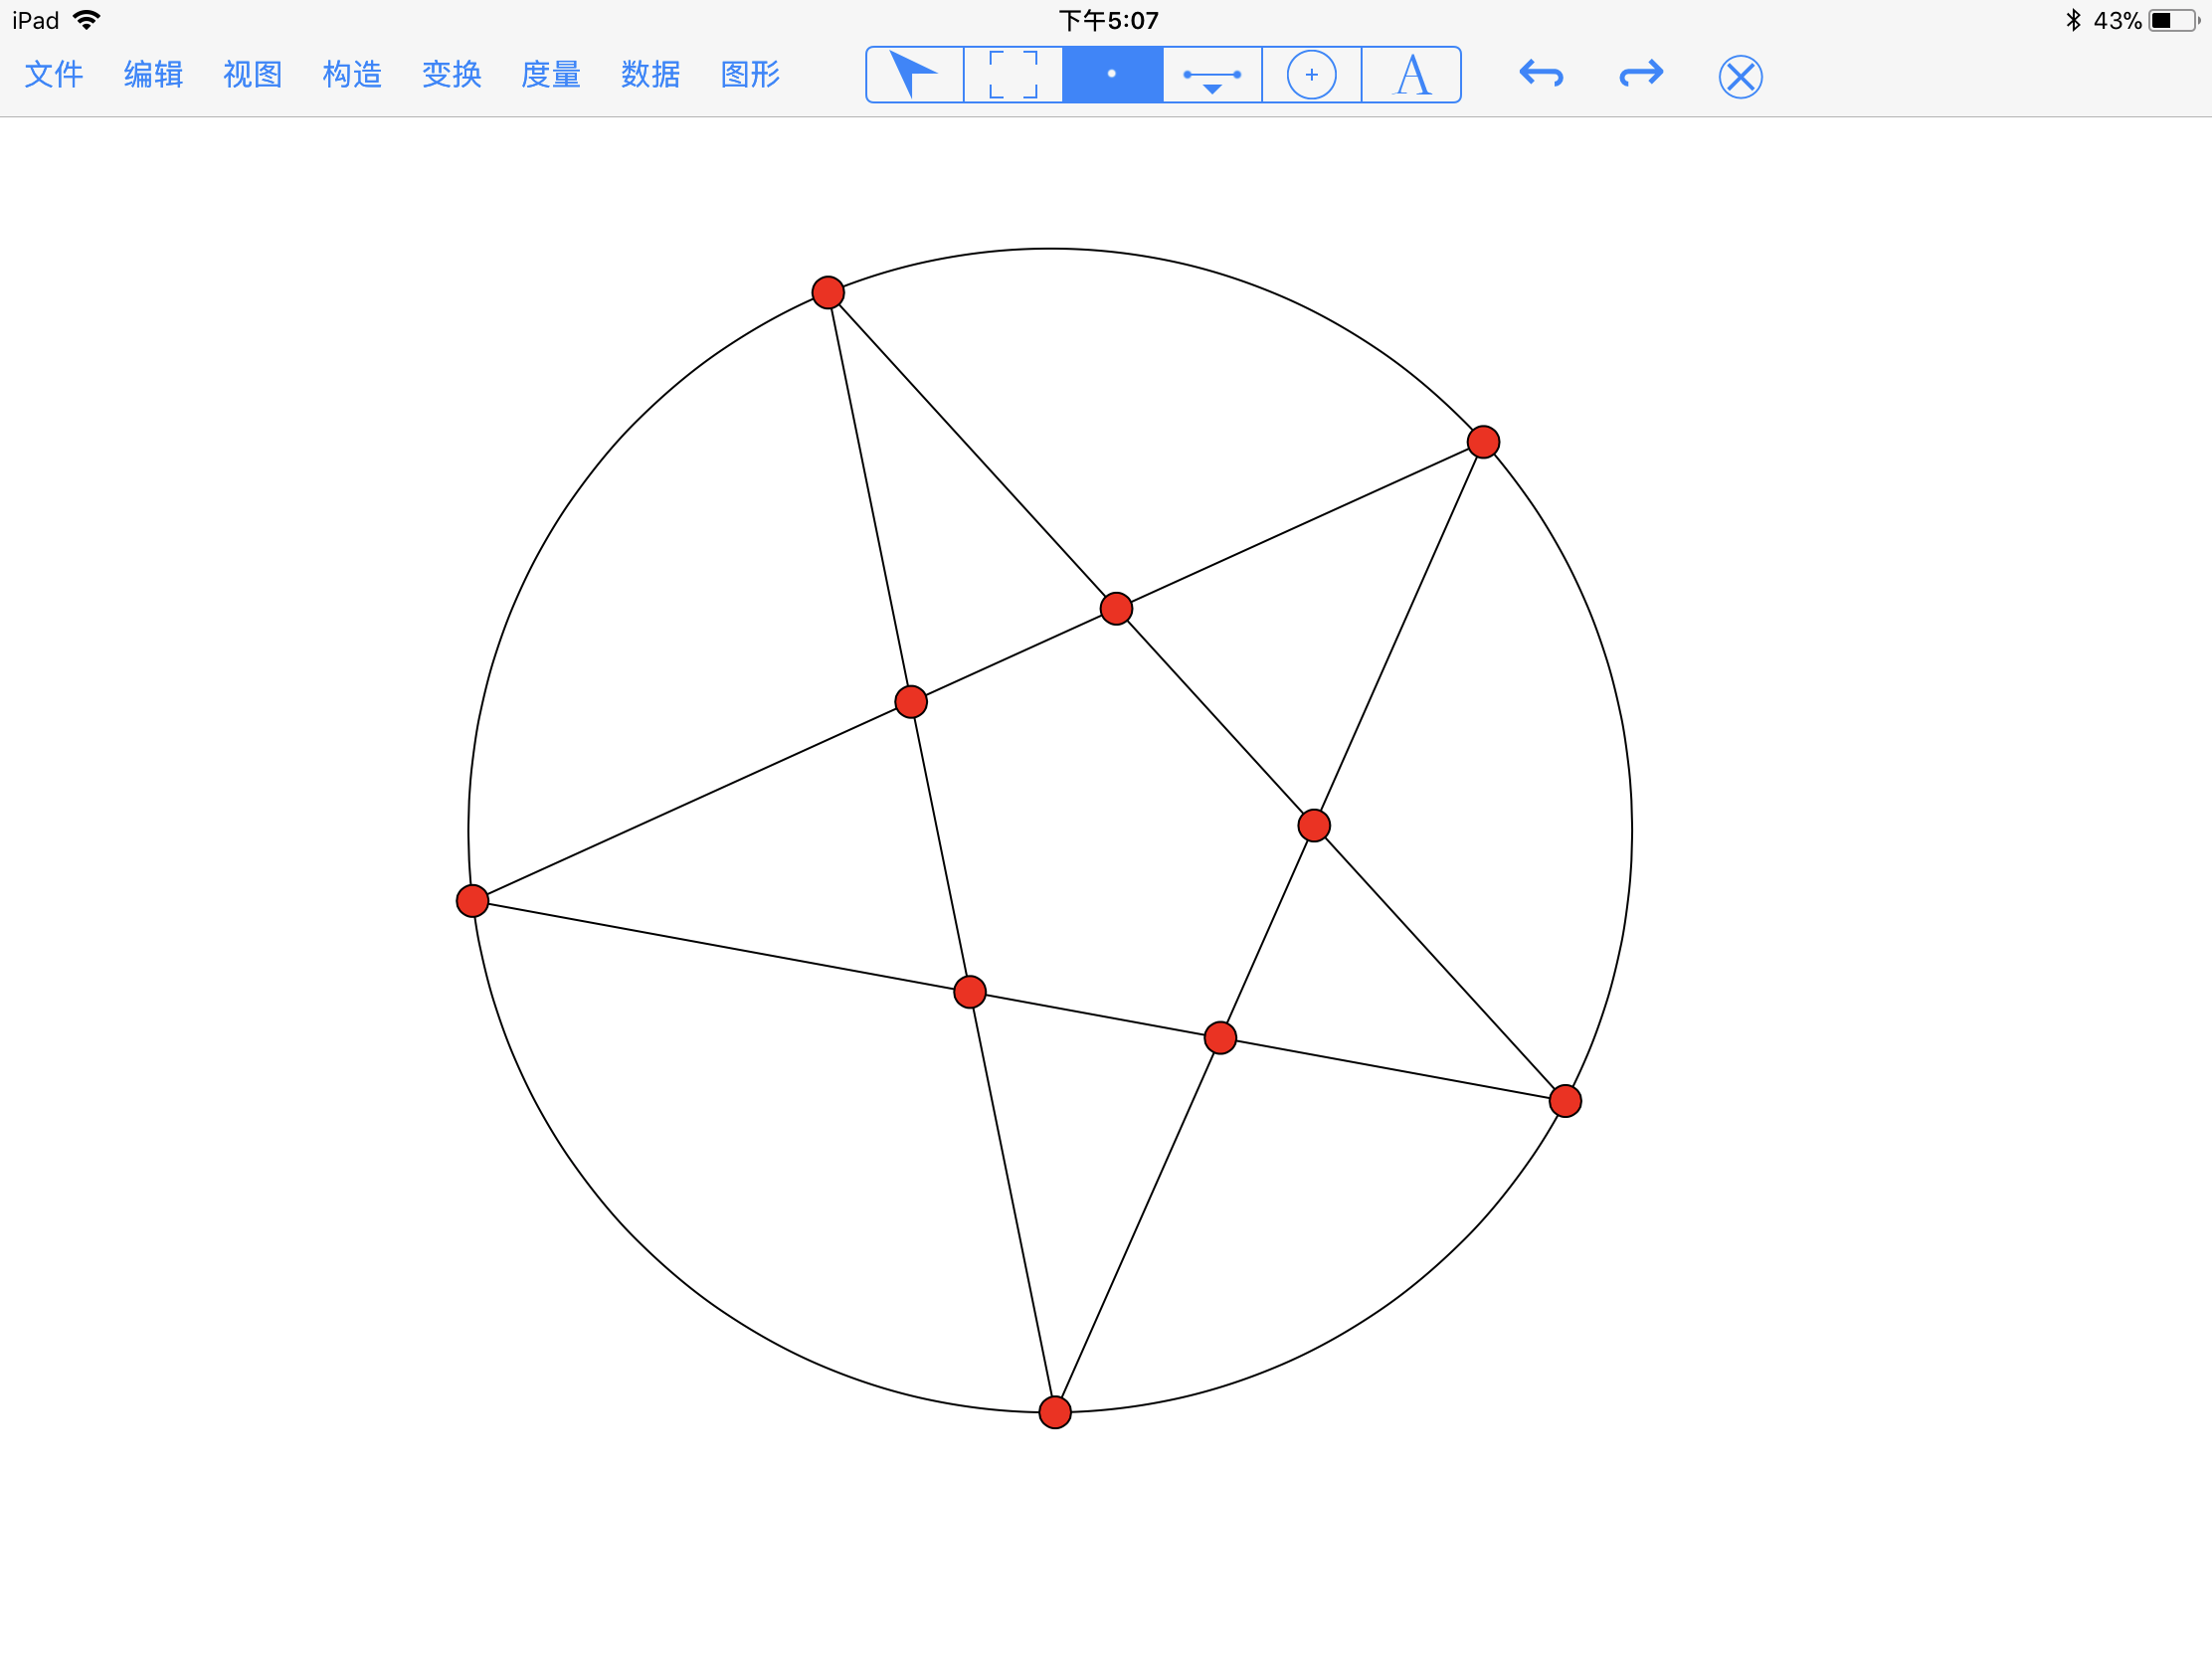 旋转图片，用PS制作围绕中心点复制的旋转图形 - 新手教程 - PS教程自学网